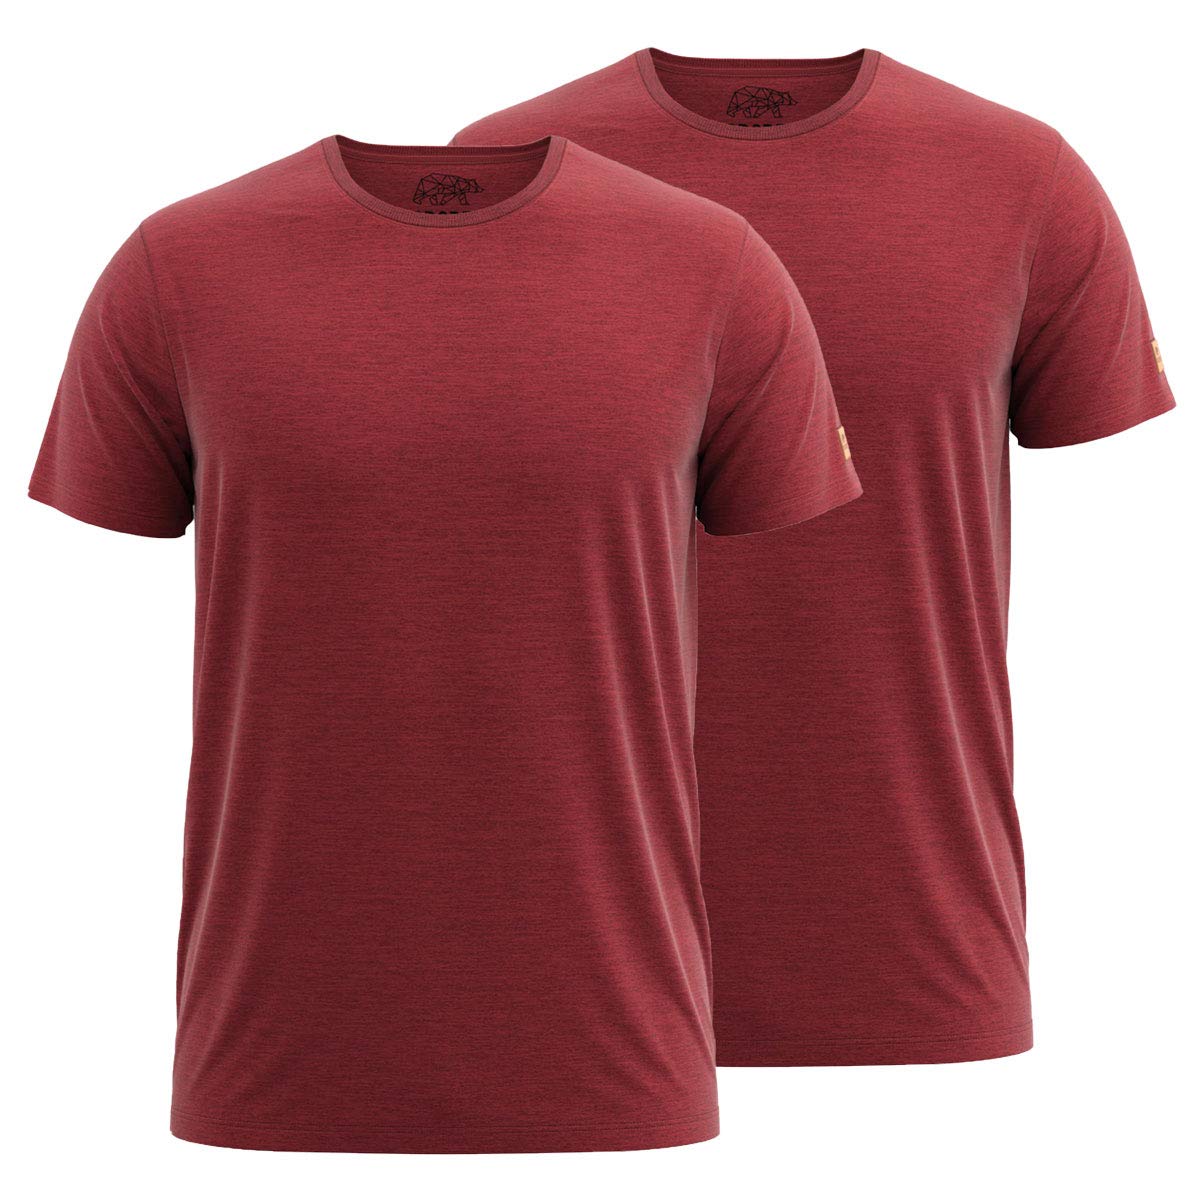 FORSBERG T-Shirt Doppelpack zum Sparpreis einfarbig Rundhals hochwertig robust bequem guter Schnitt, Farbe:rot, Größe:L